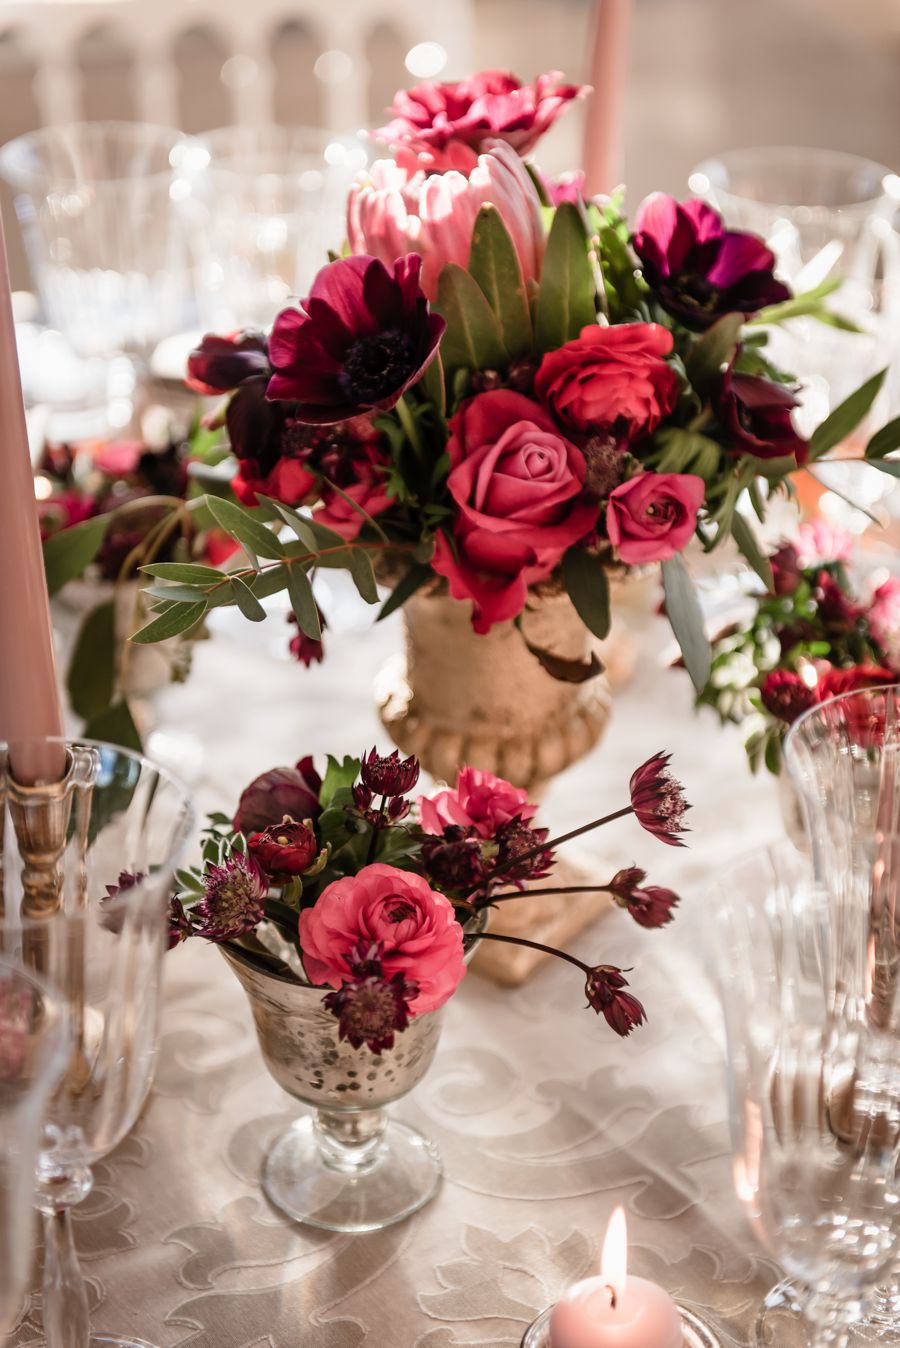 Décoration et centre de table en rose romantique de mariage en novembre par Elisabeth Delsol.